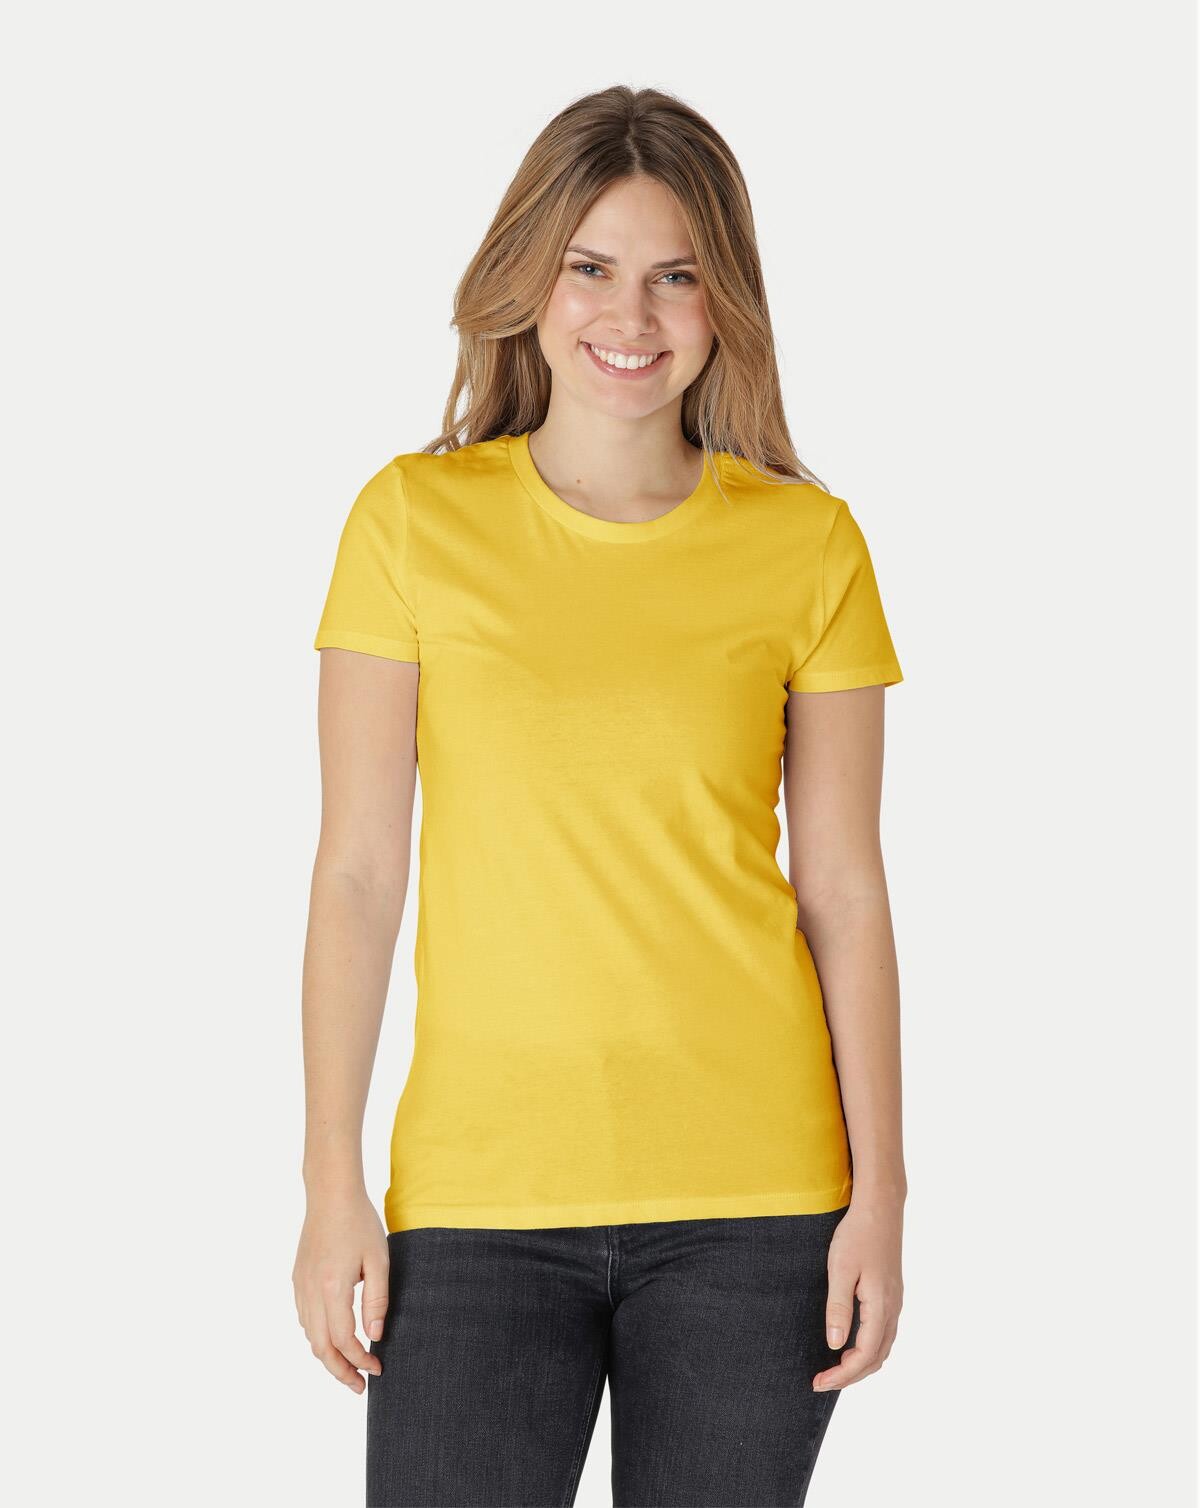 Neutral Økologisk Dame Tætsiddende T-Shirt (Gul, XL)